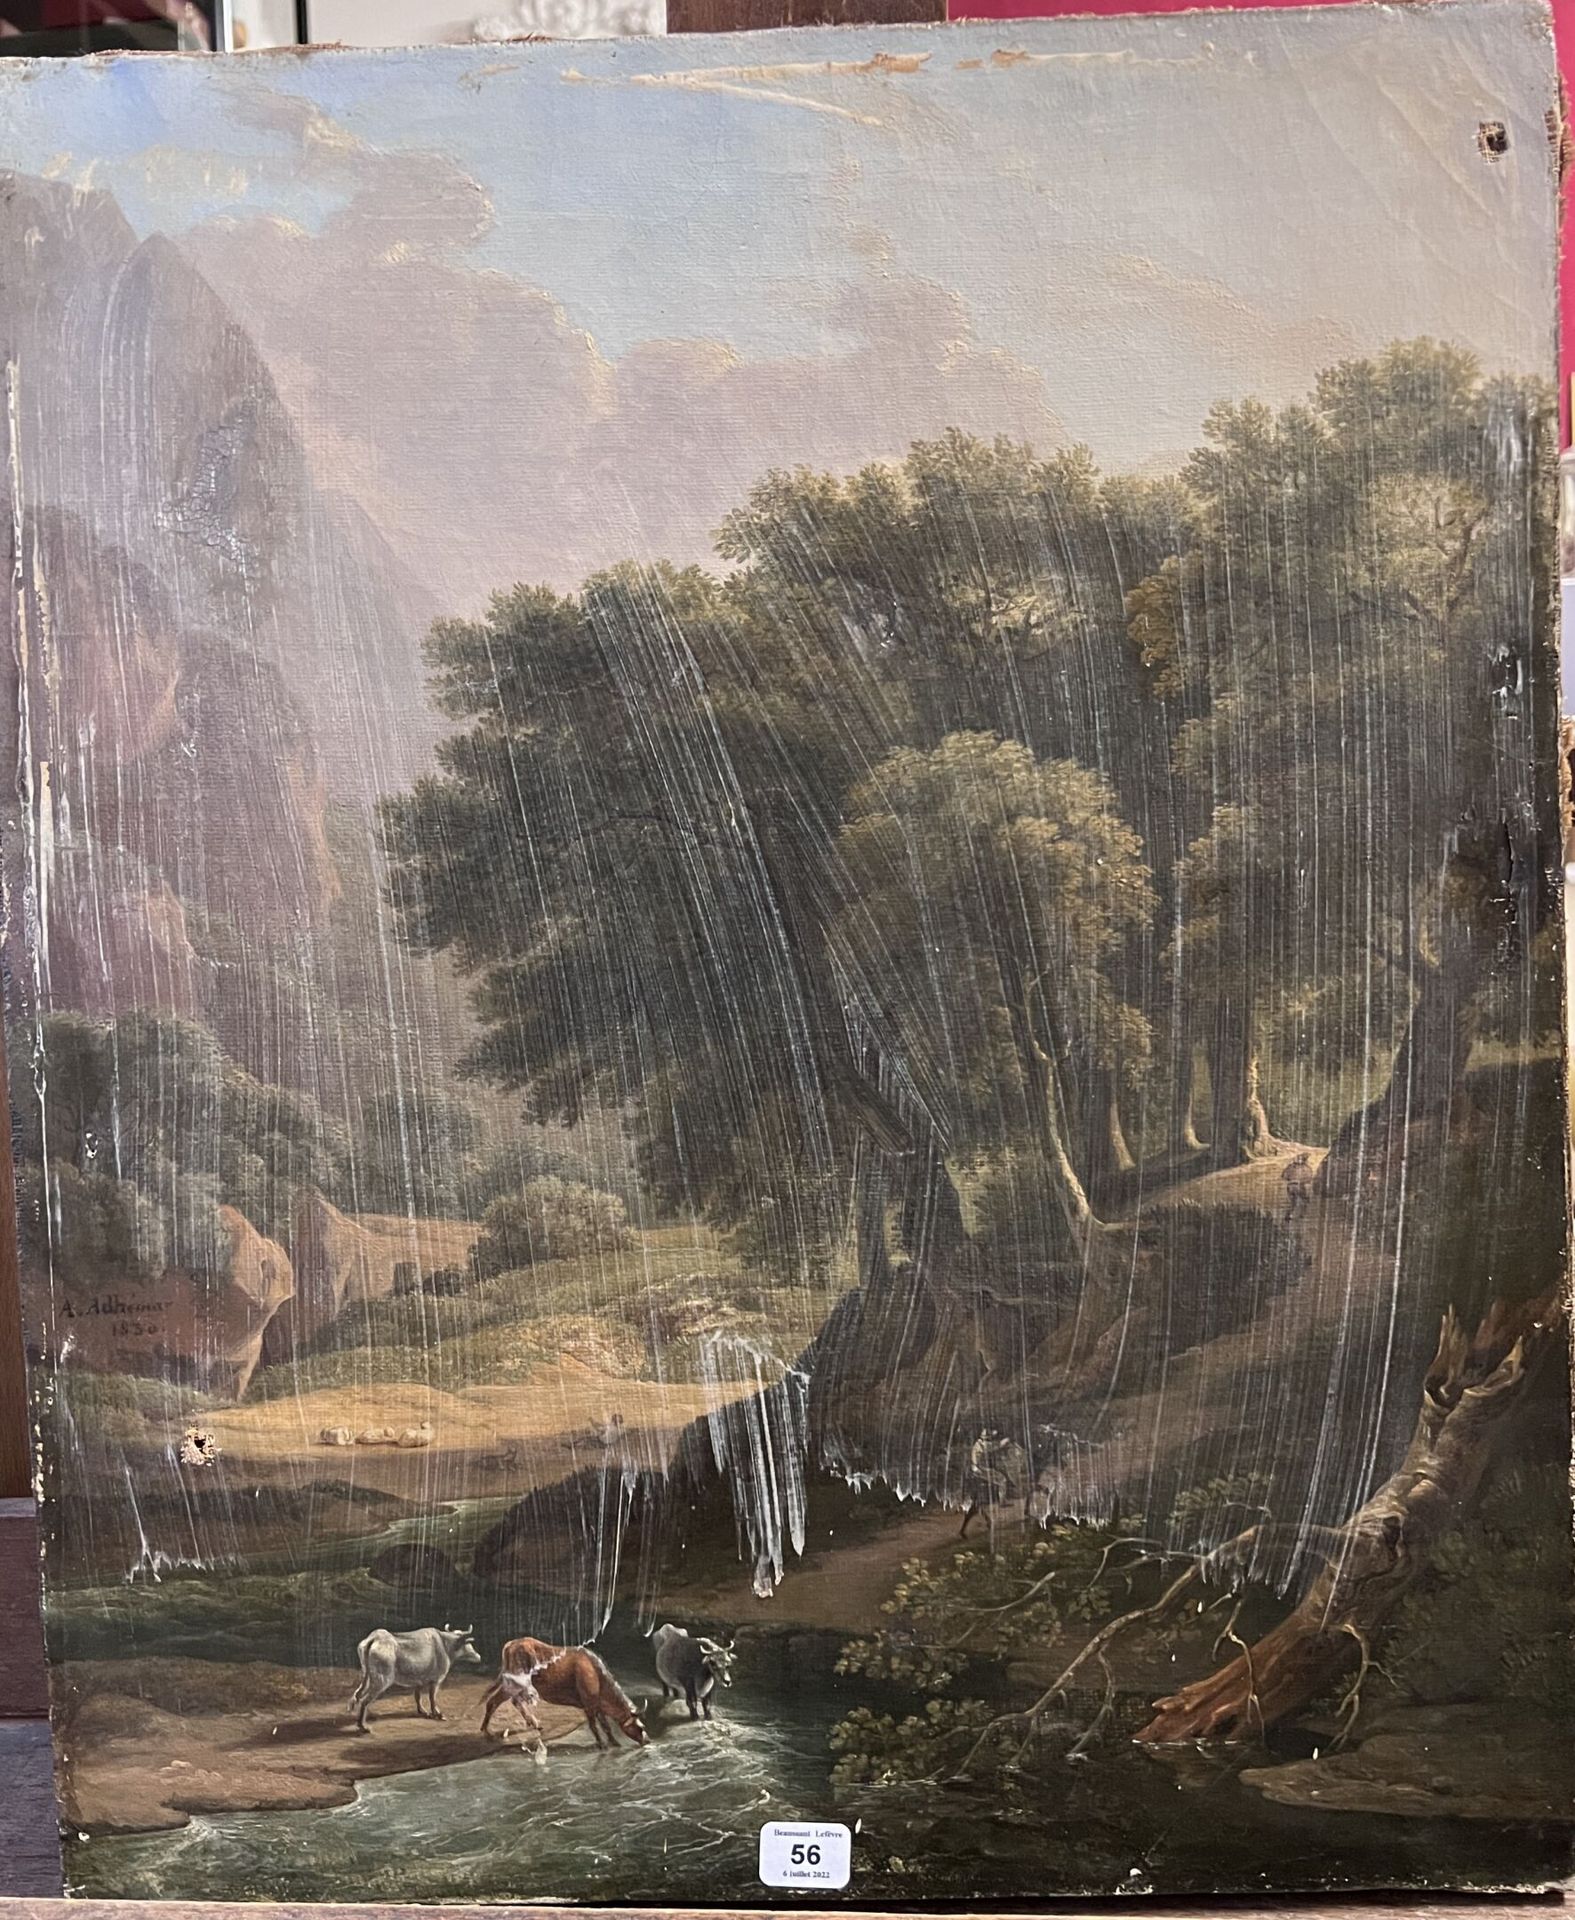 Null A.ADHEMAR。

19世纪末的学校。

"溪边的牛"。

布面油画，署名A。ADHEMAR，日期为1830年，45 x 37厘米。

洞和泥土。